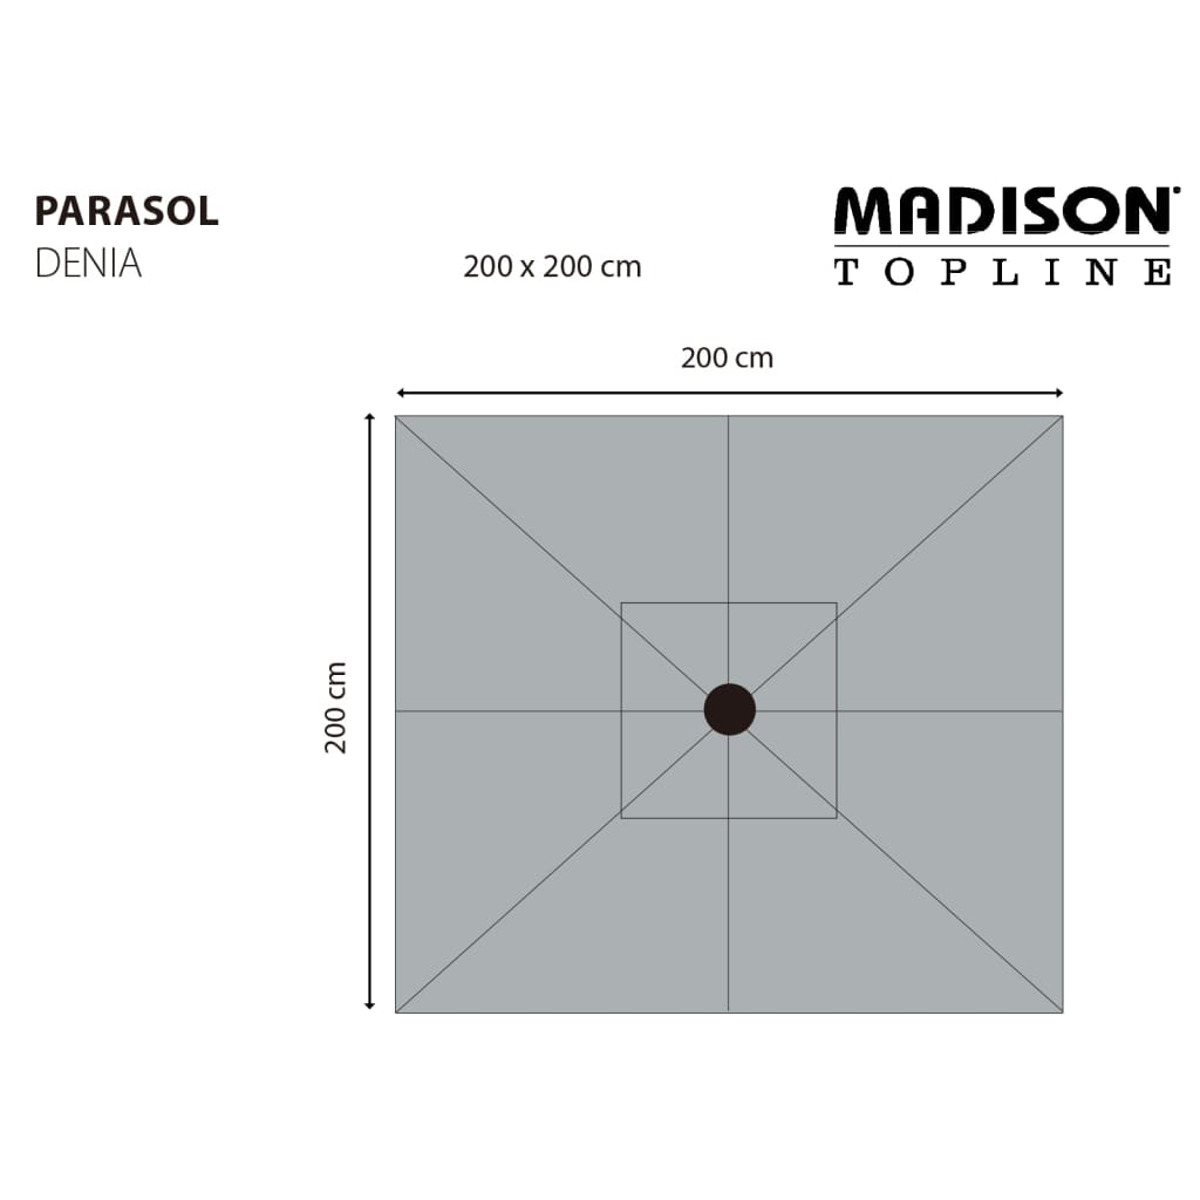 MADISON 447149 Nicht Sonnenschirm, verfügbar